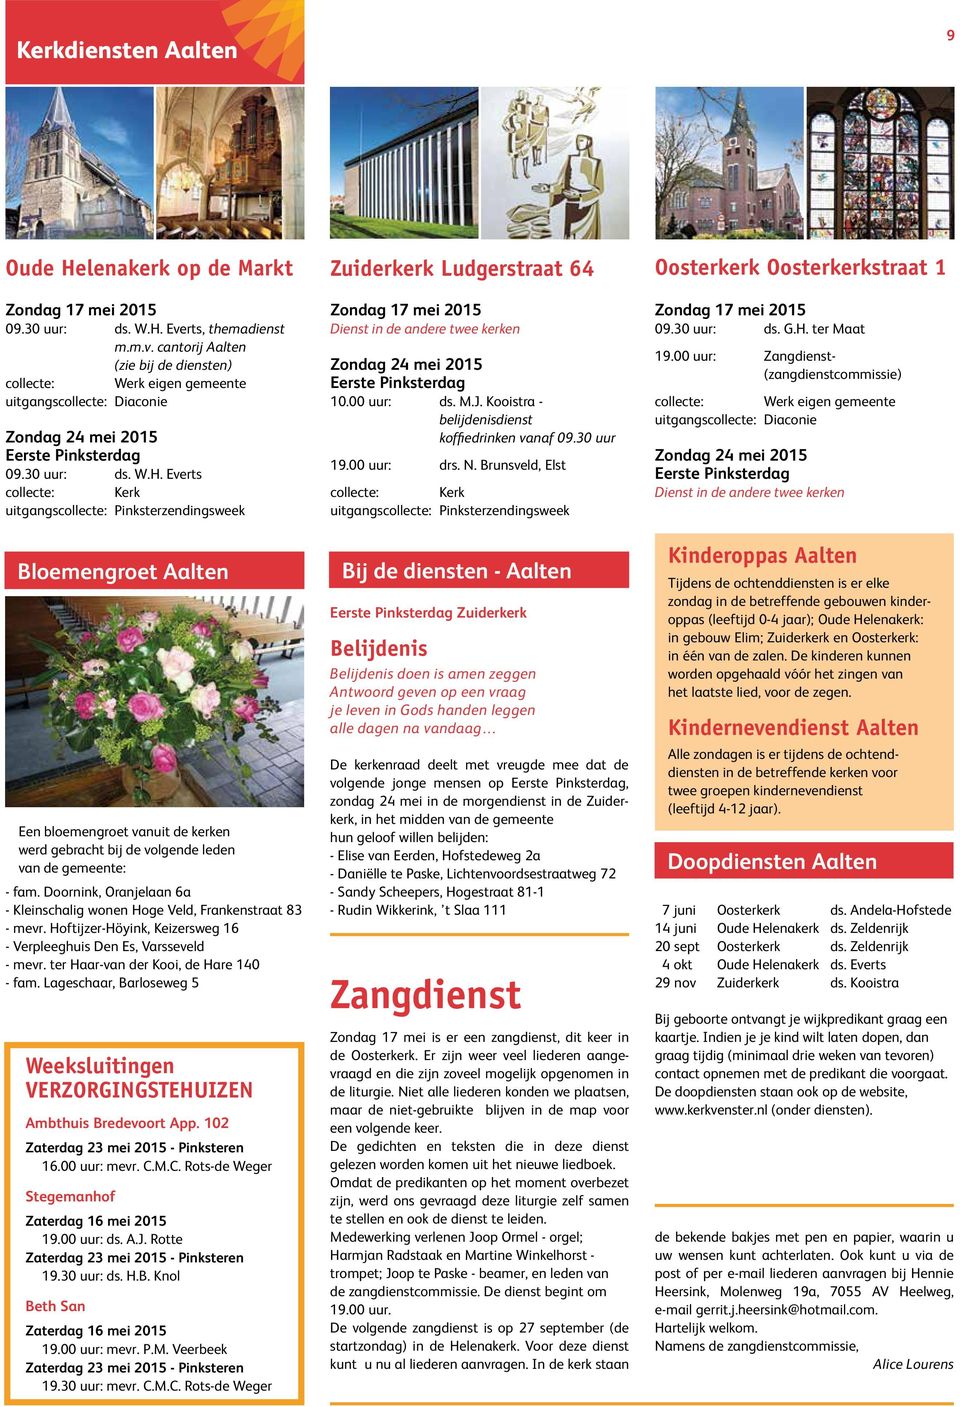 Everts collecte: Kerk uitgangscollecte: Pinksterzendingsweek Bloemengroet Aalten Een bloemengroet vanuit de kerken werd gebracht bij de volgende leden van de gemeente: - fam.